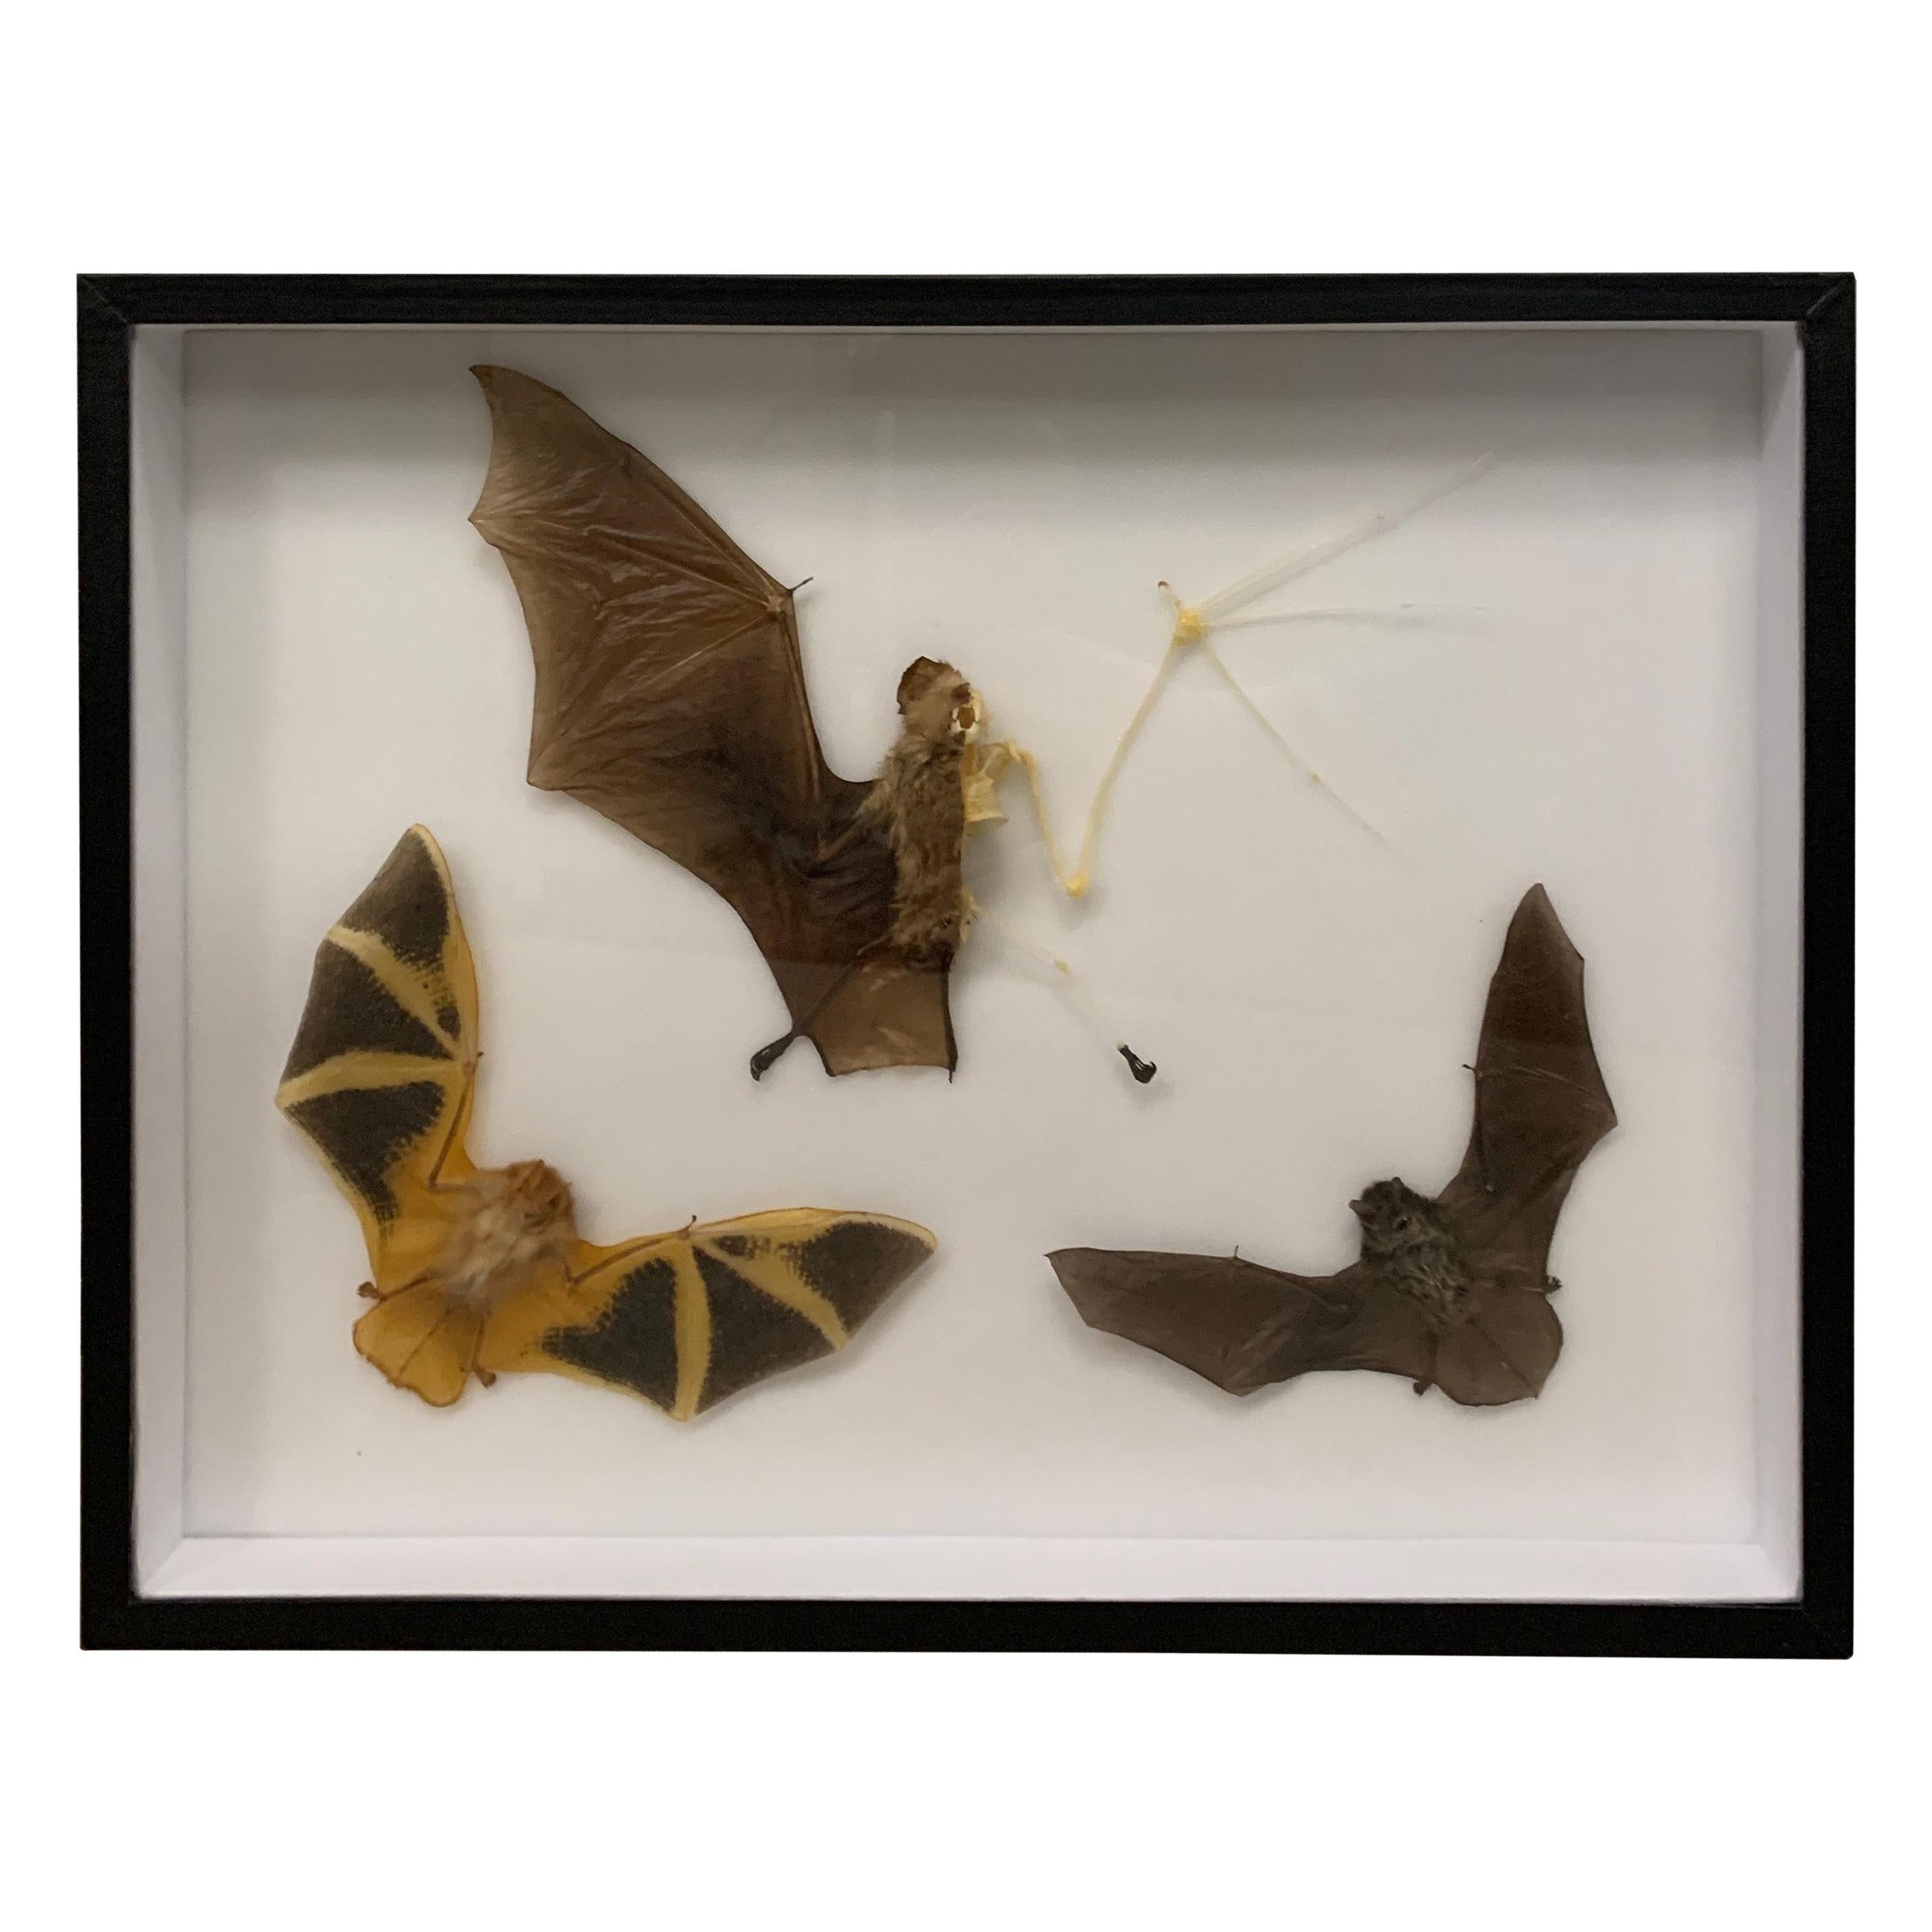 Taxidermy Display Bat Species, Wood, Glass